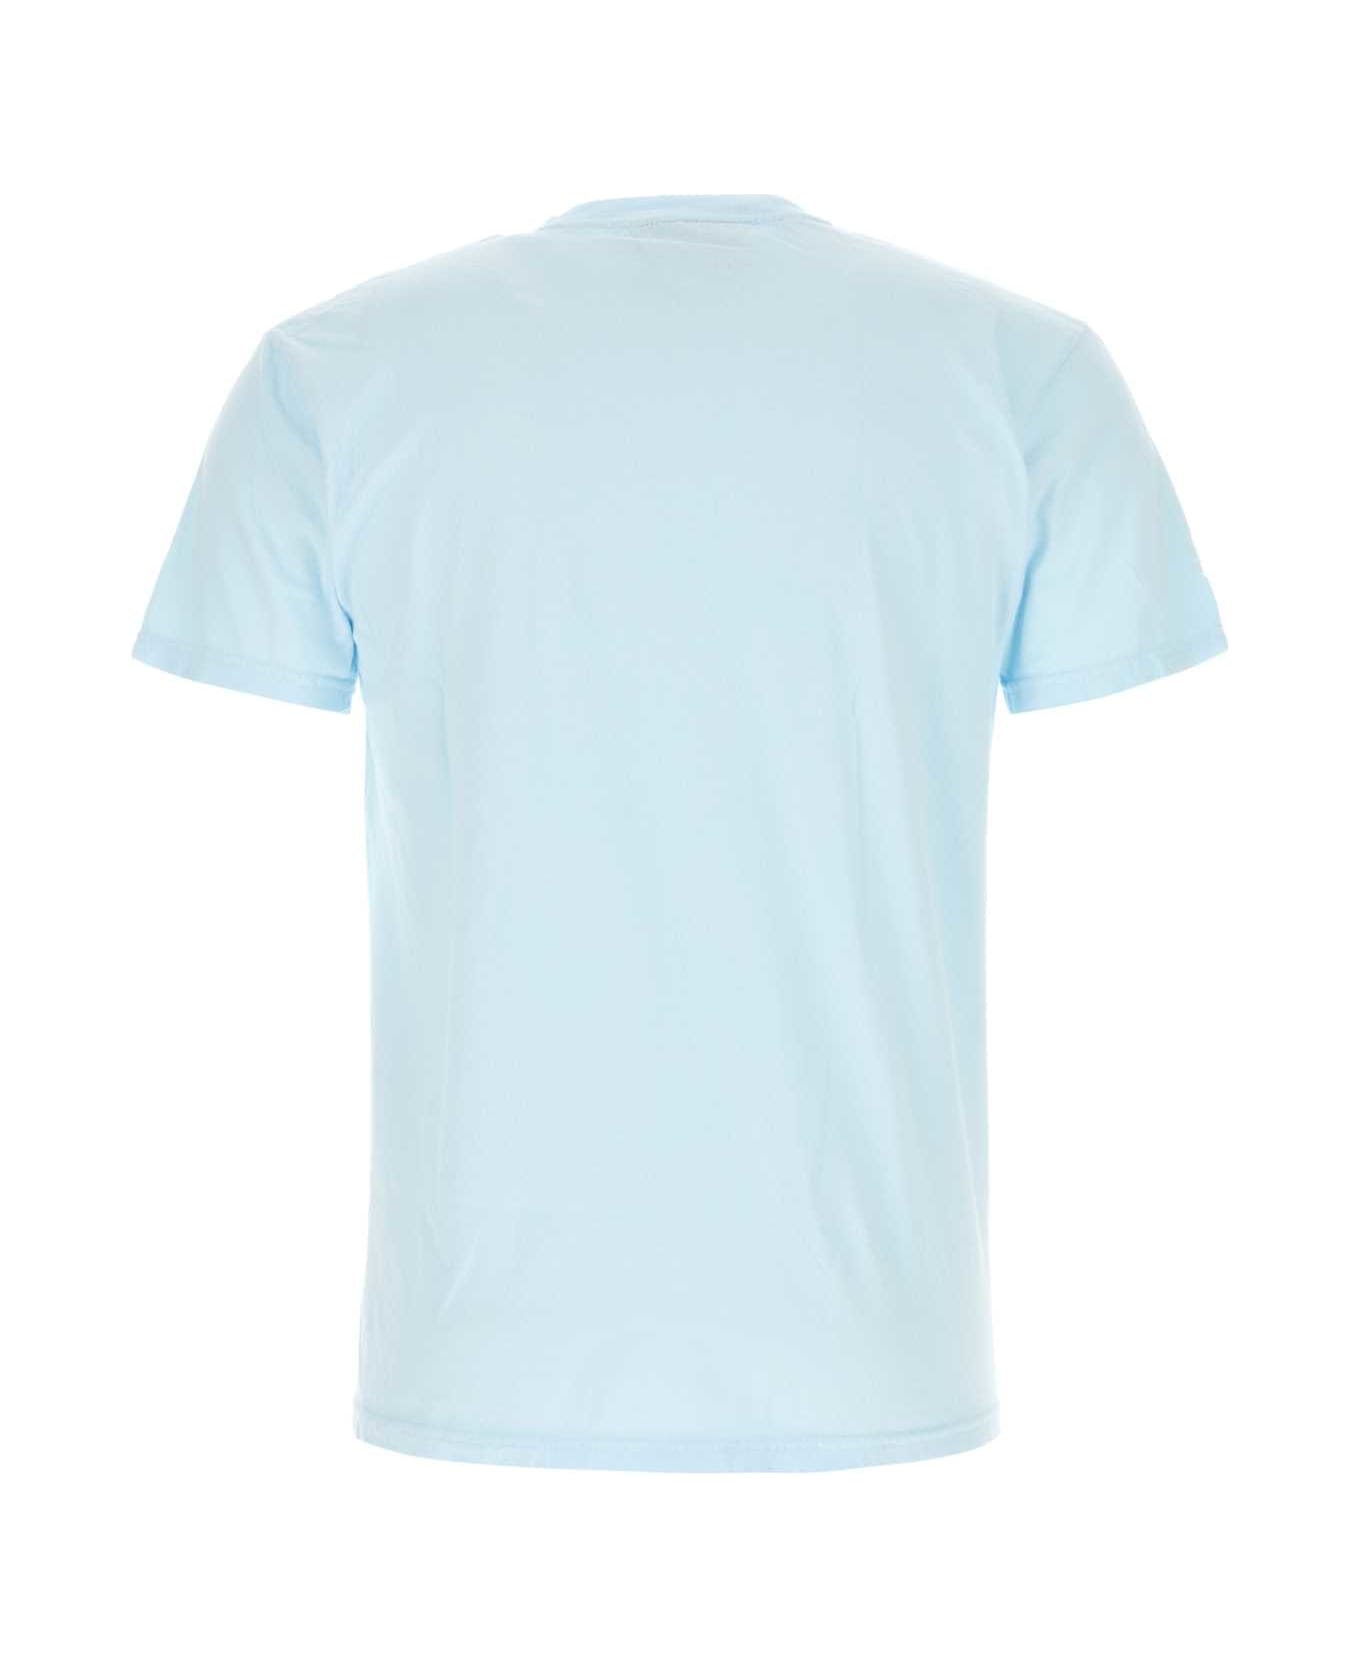 Kidsuper Light-blue Cotton T-shirt - KIDSUPERWAVE シャツ